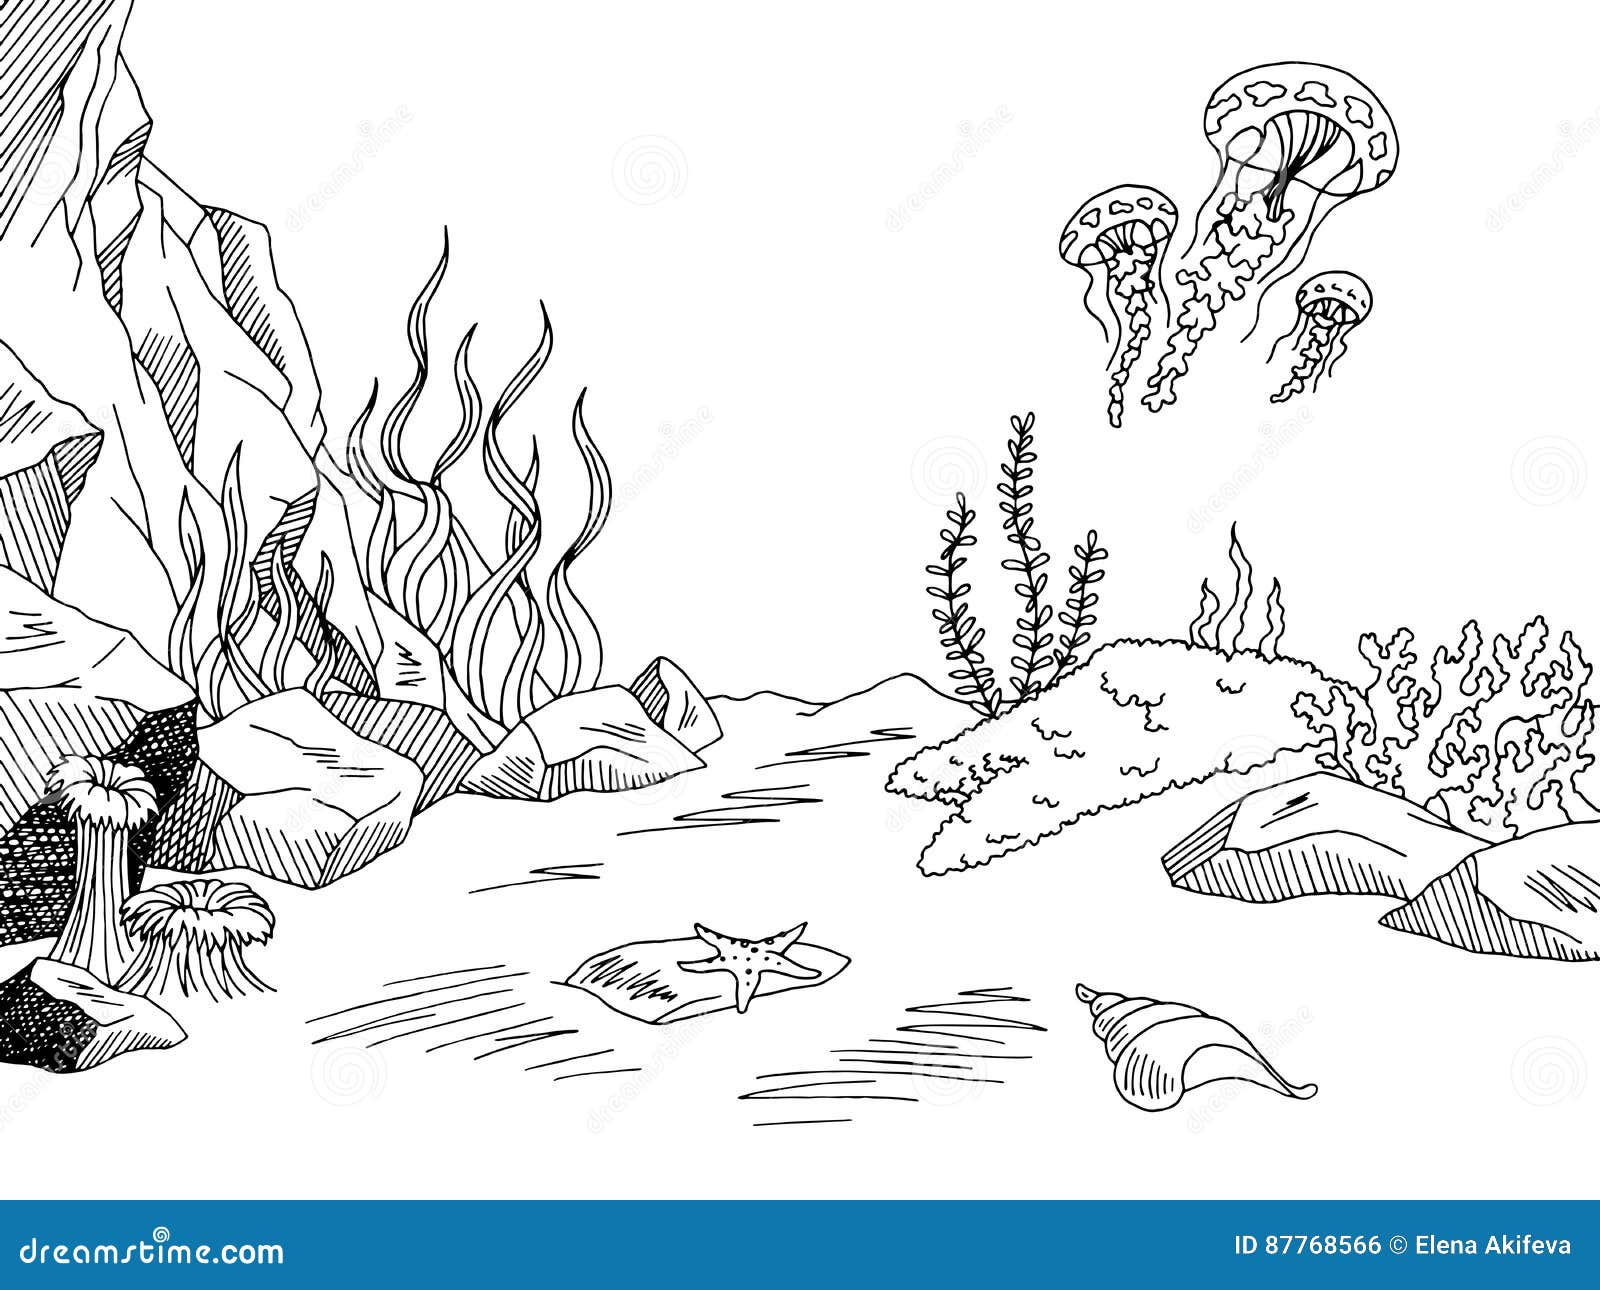 Với bộ sưu tập tranh minh họa về đại dương dưới nước, bạn hoàn toàn có thể trải nghiệm cảm giác như đang lang thang dưới đáy đại dương thực sự. Những hình ảnh về động vật biển, rong biển, san hô,...được phác thảo một cách tinh tế sẽ giúp bạn khám phá thế giới dưới nước mới lạ và thú vị hơn.